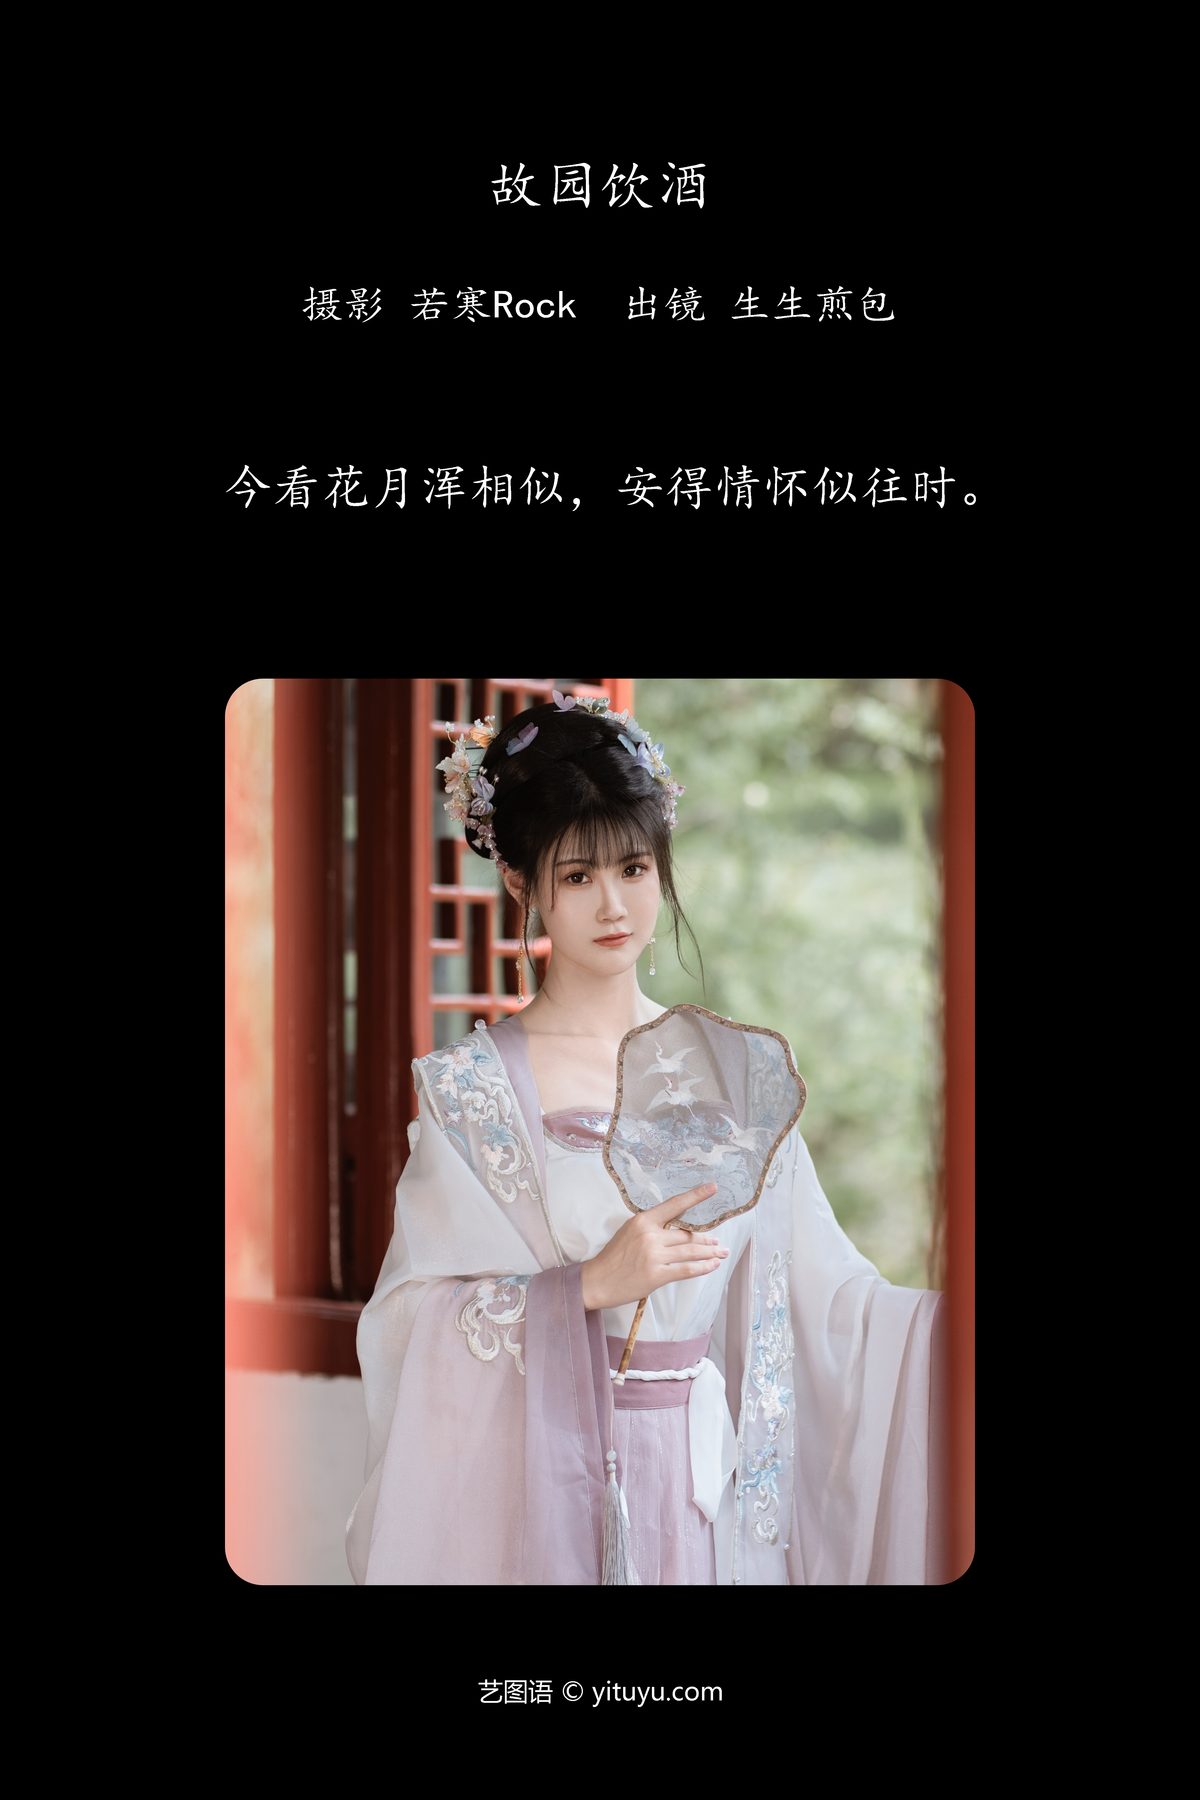 YiTuYu艺图语 Vol 5813 Sheng Sheng Jian Bao 0002 5383661824.jpg